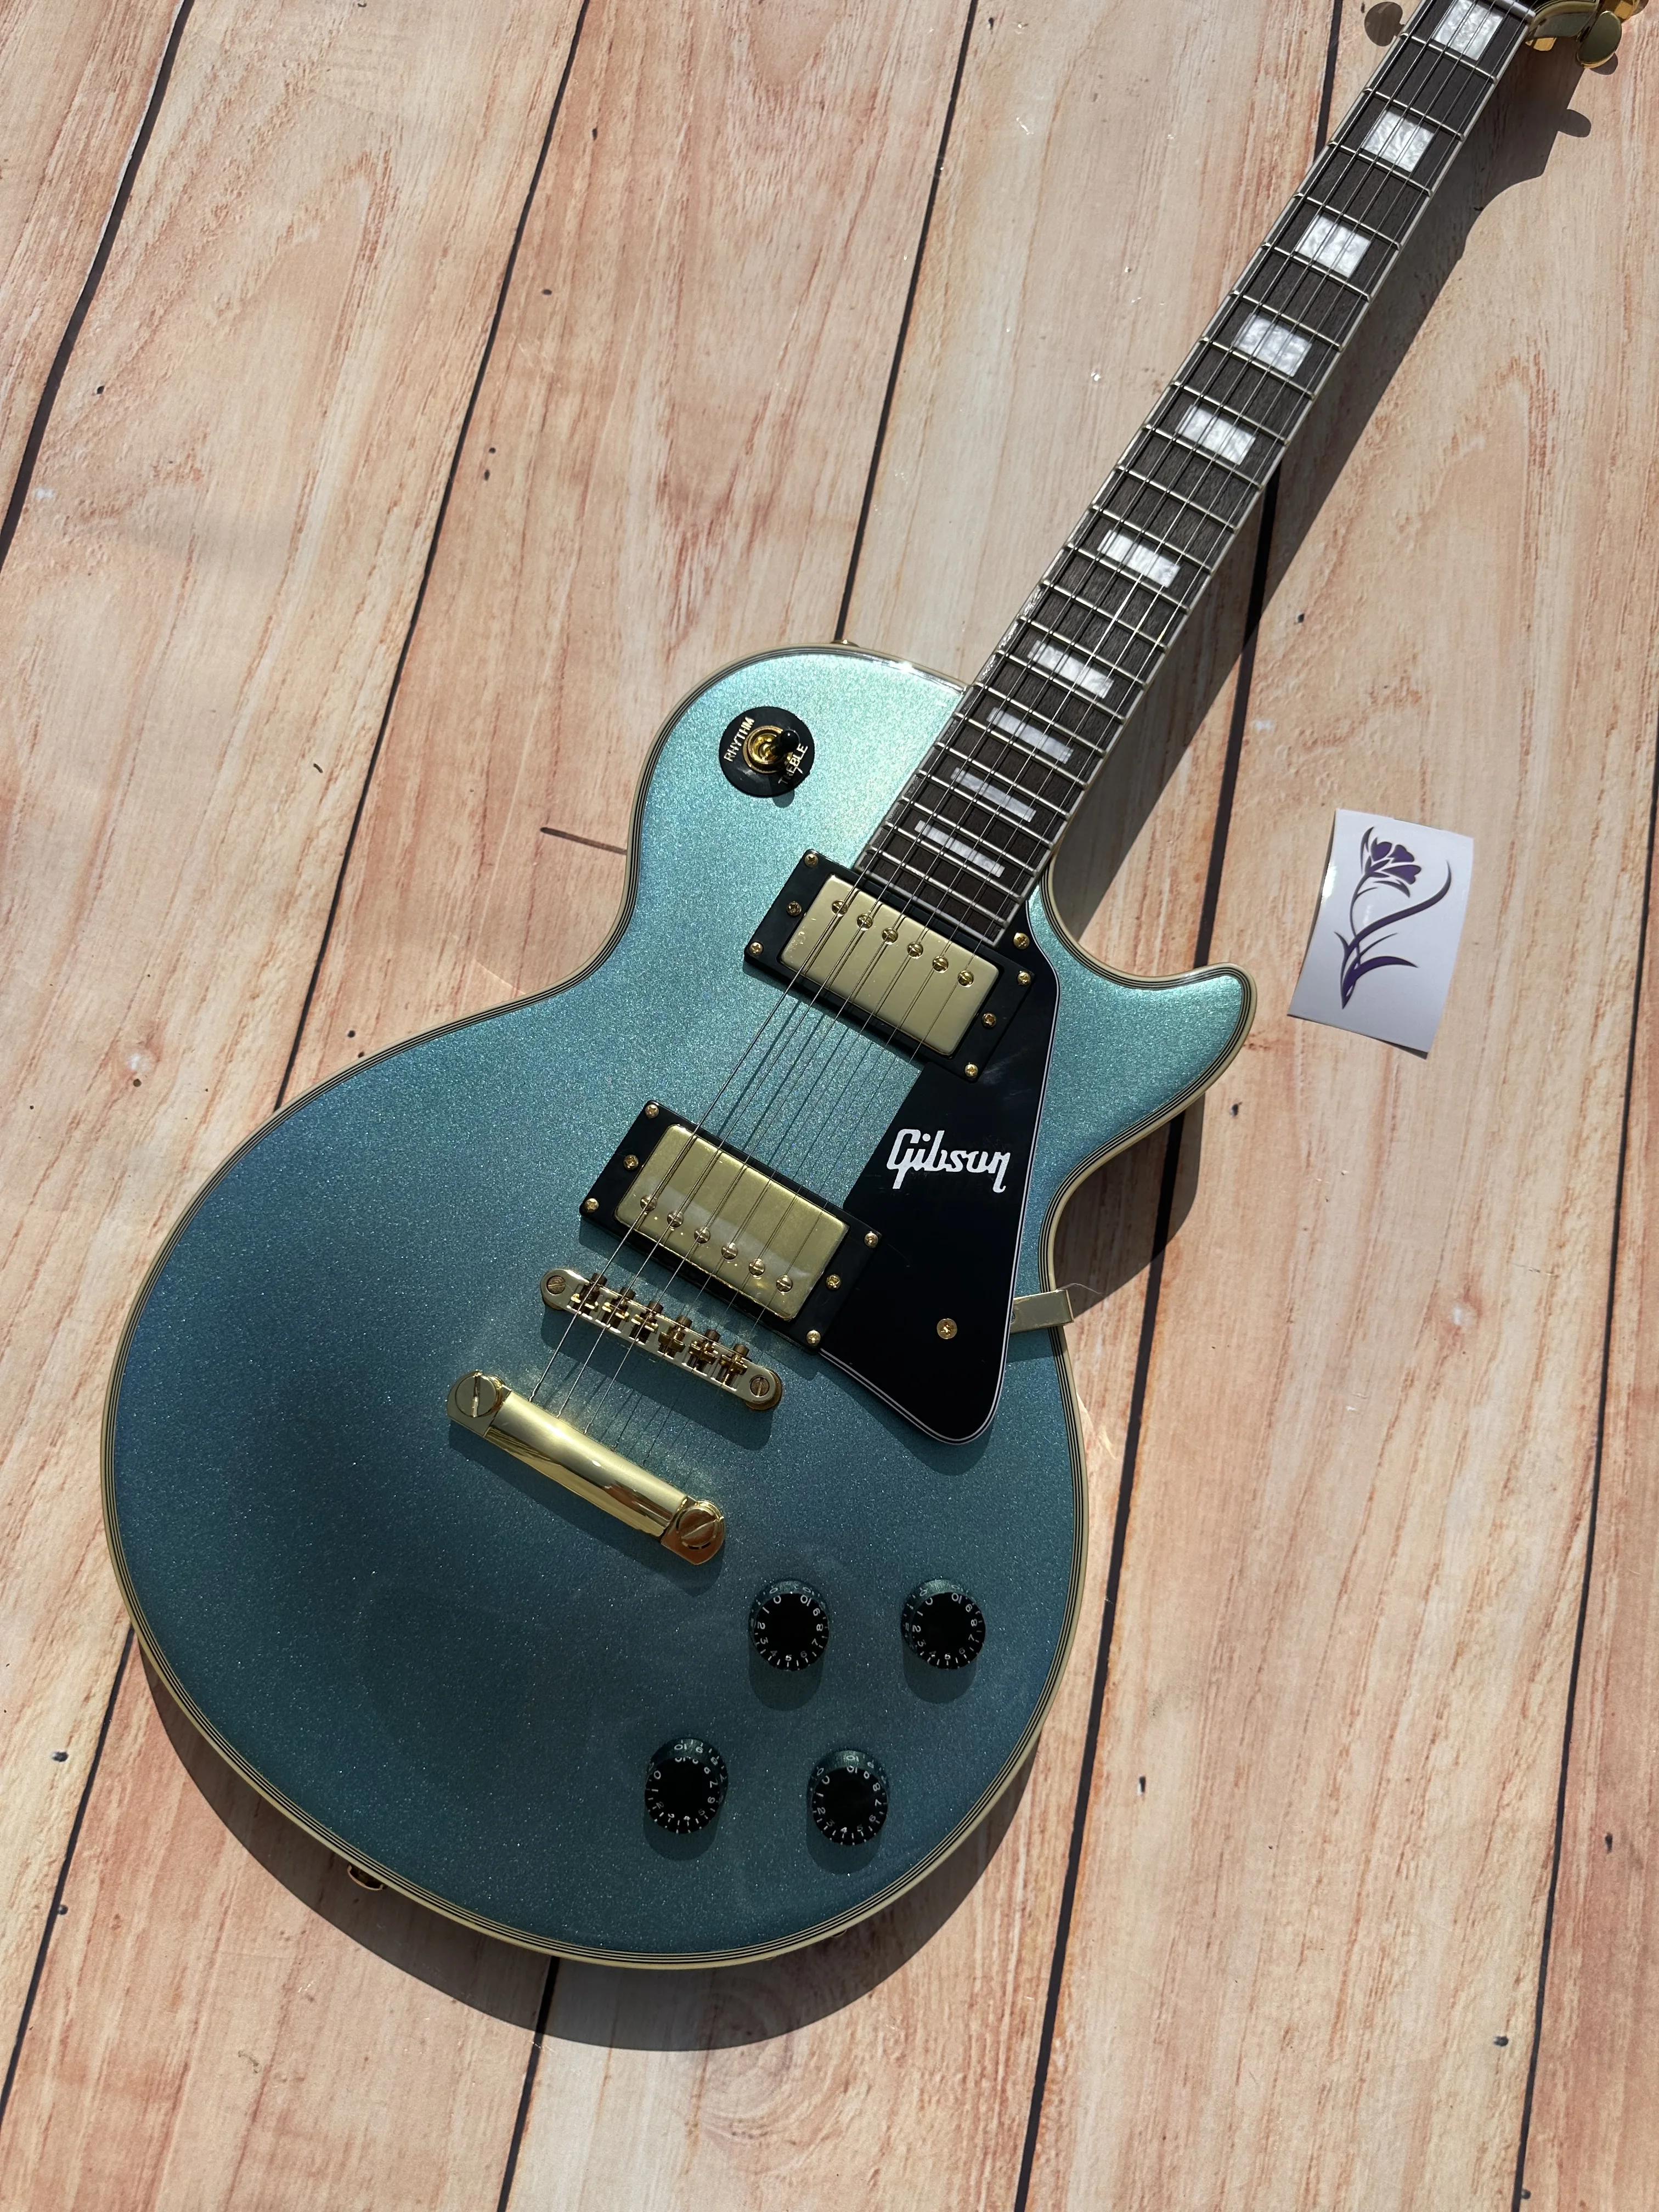 

Индивидуальная электрическая гитара, Pelham Caston, полностью синяя, золотые аксессуары и тюнер, вспышка